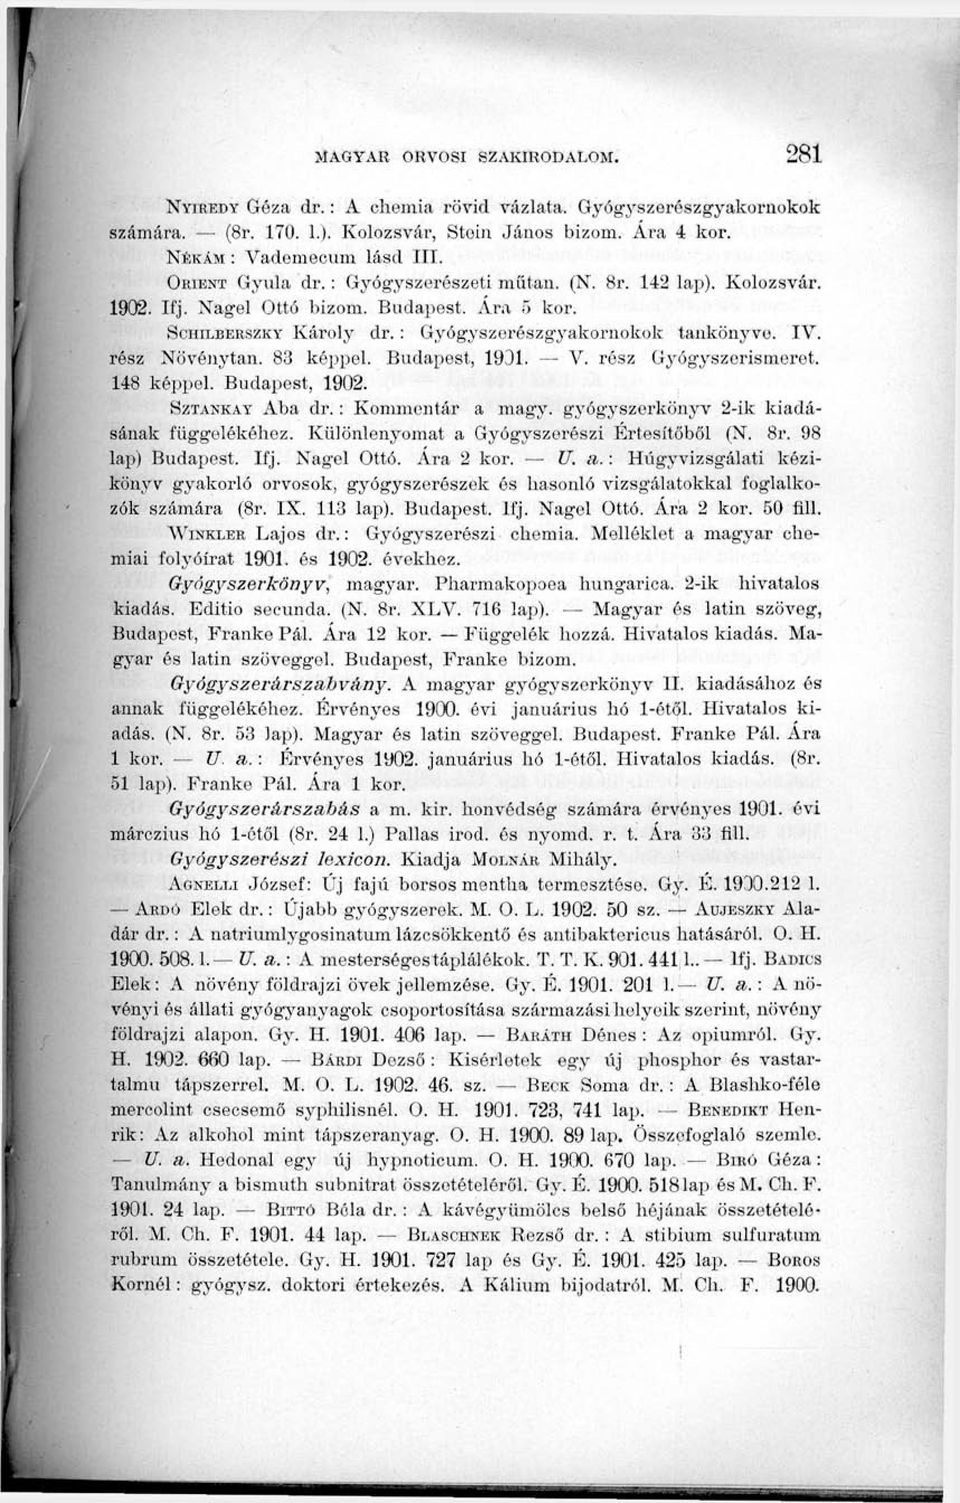 83 képpel. Budapest, 1931. V. rész Gyógyszerismeret. 148 képpel. Budapest, 1902. SzTANKAY Aba dr.: Kommentár a magy. gyógyszerkönyv 2-ik kiadásának függelékéhez.